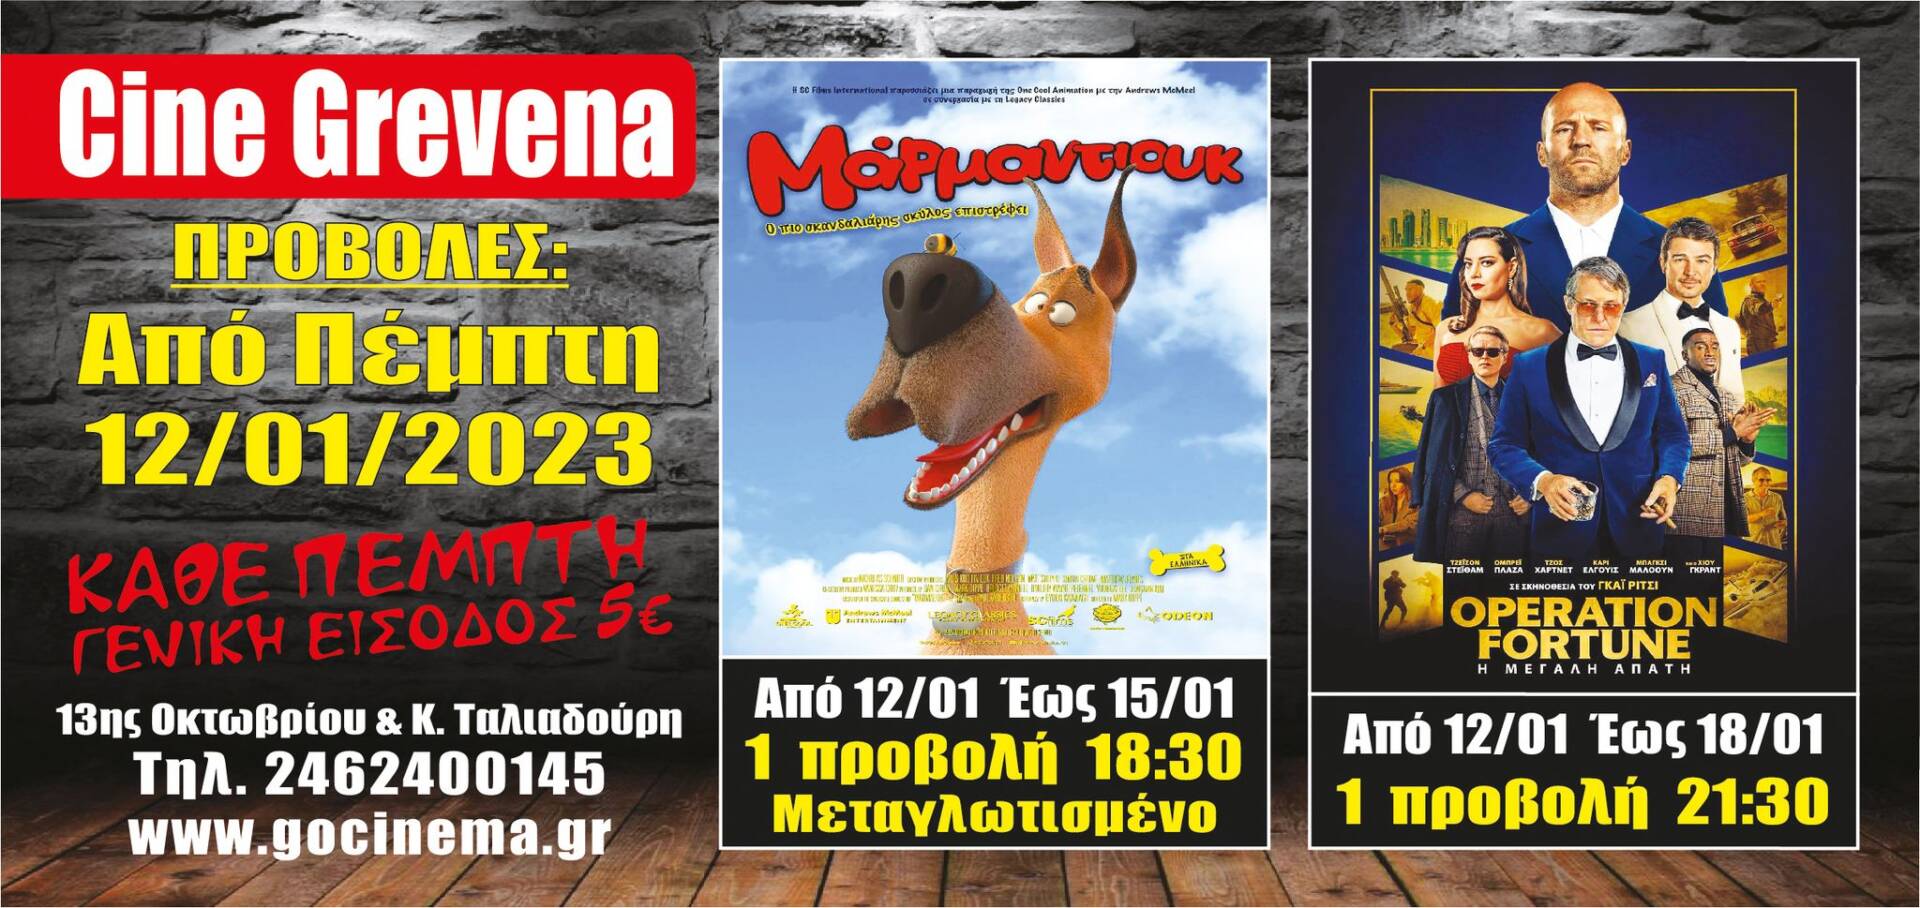 Νέα κινηματογραφική εβδομάδα στο Cine Grevena από Πέμπτη 12 έως την Τετάρτη 18 Ιανουαρίου